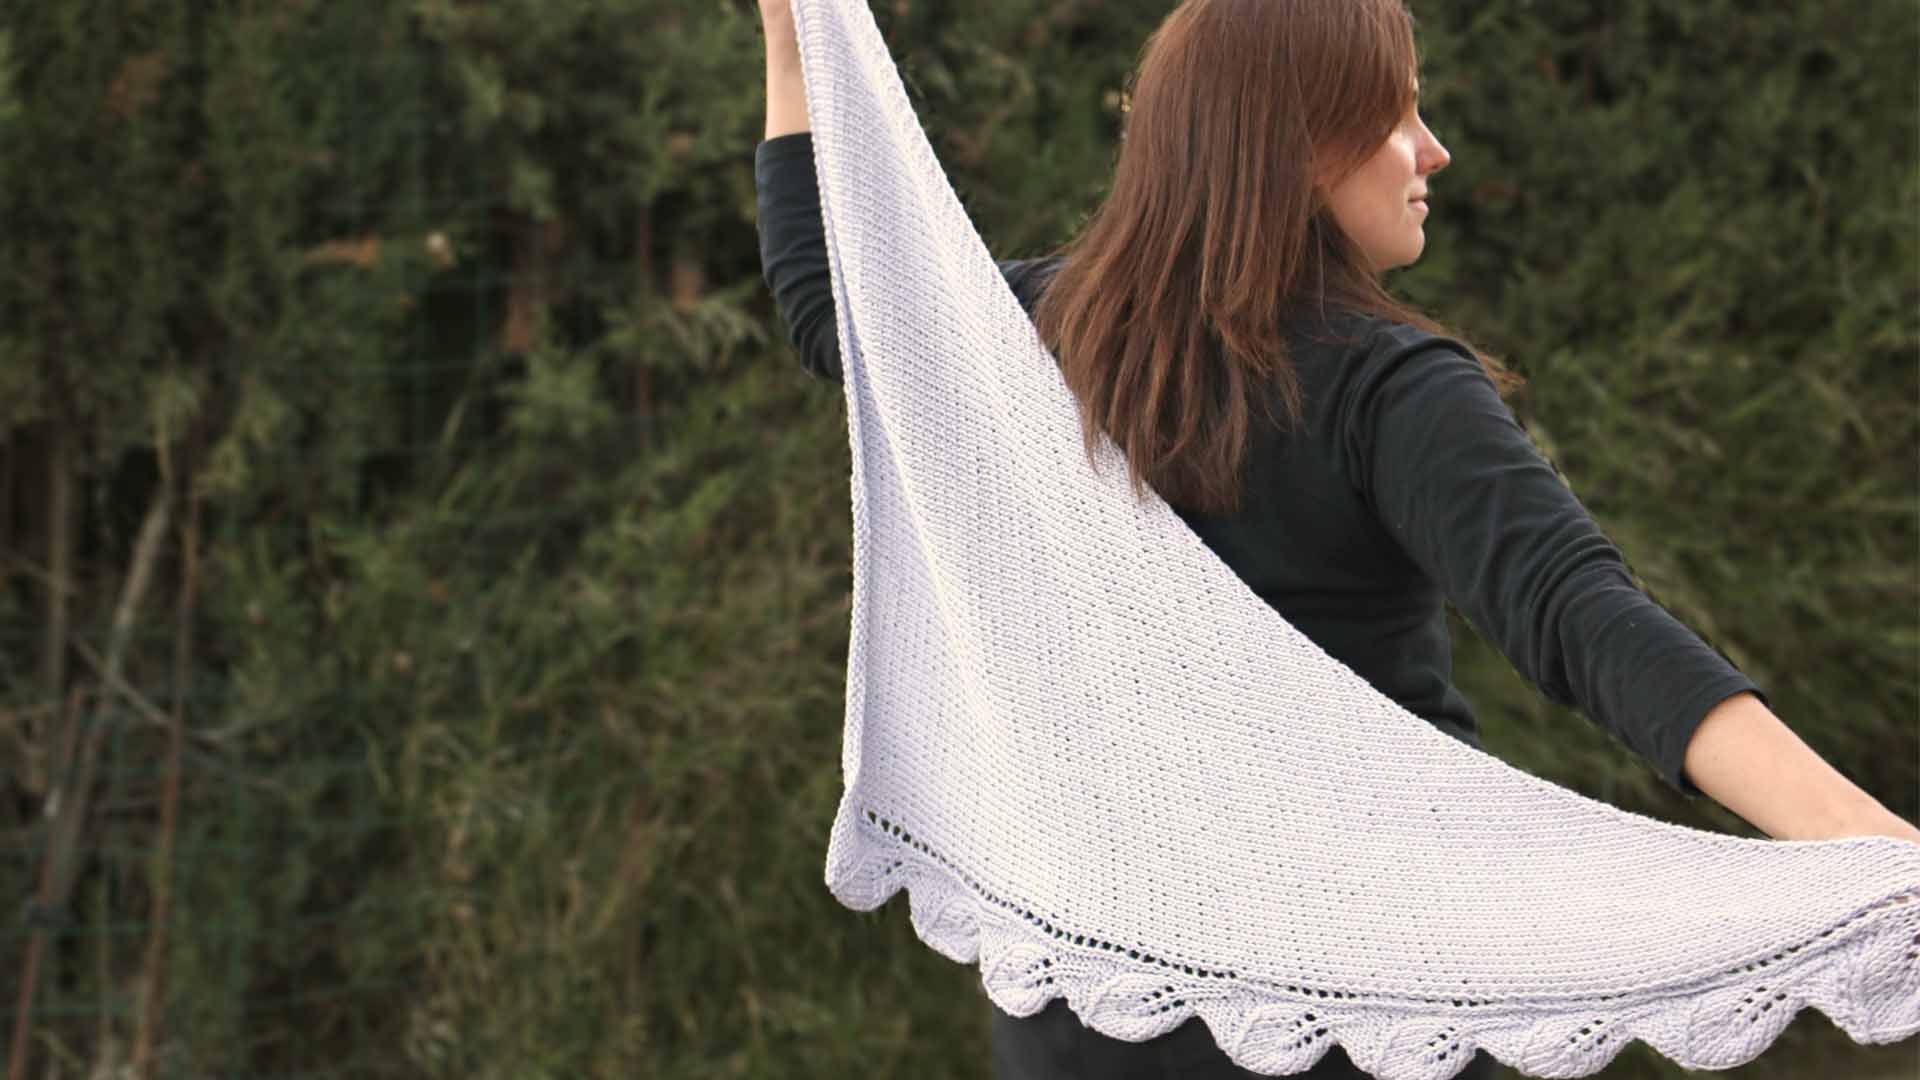 knitting leafs shawl free pattern